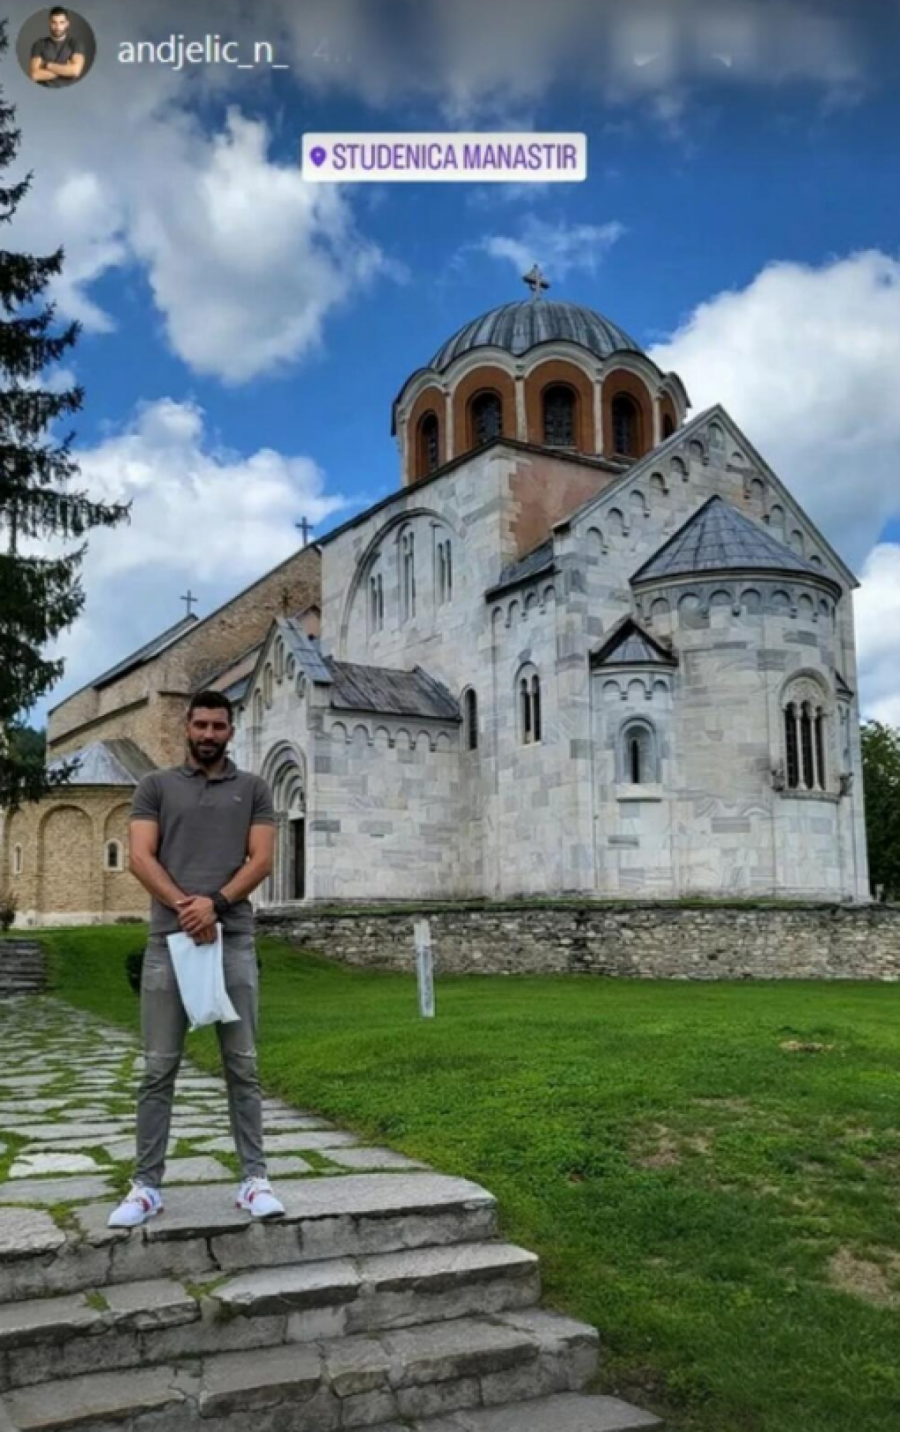 NAKON PRIVOĐENJA SE PROMENIO Unuk Ere Ojdanića pronašao mir u manastiru, isplivala fotografija